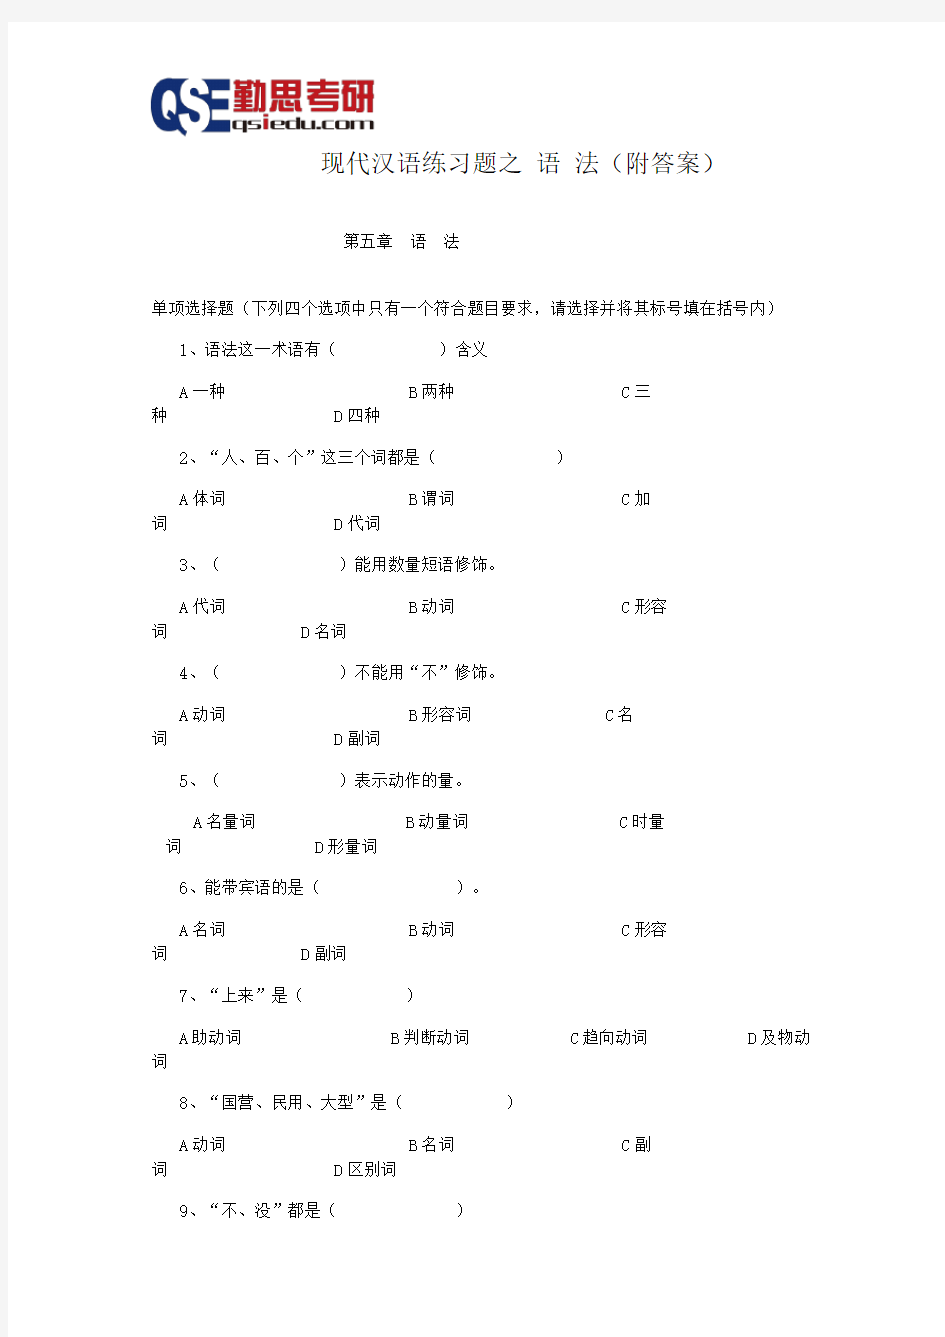 汉硕考研现代汉语练习题之语 法(附答案)